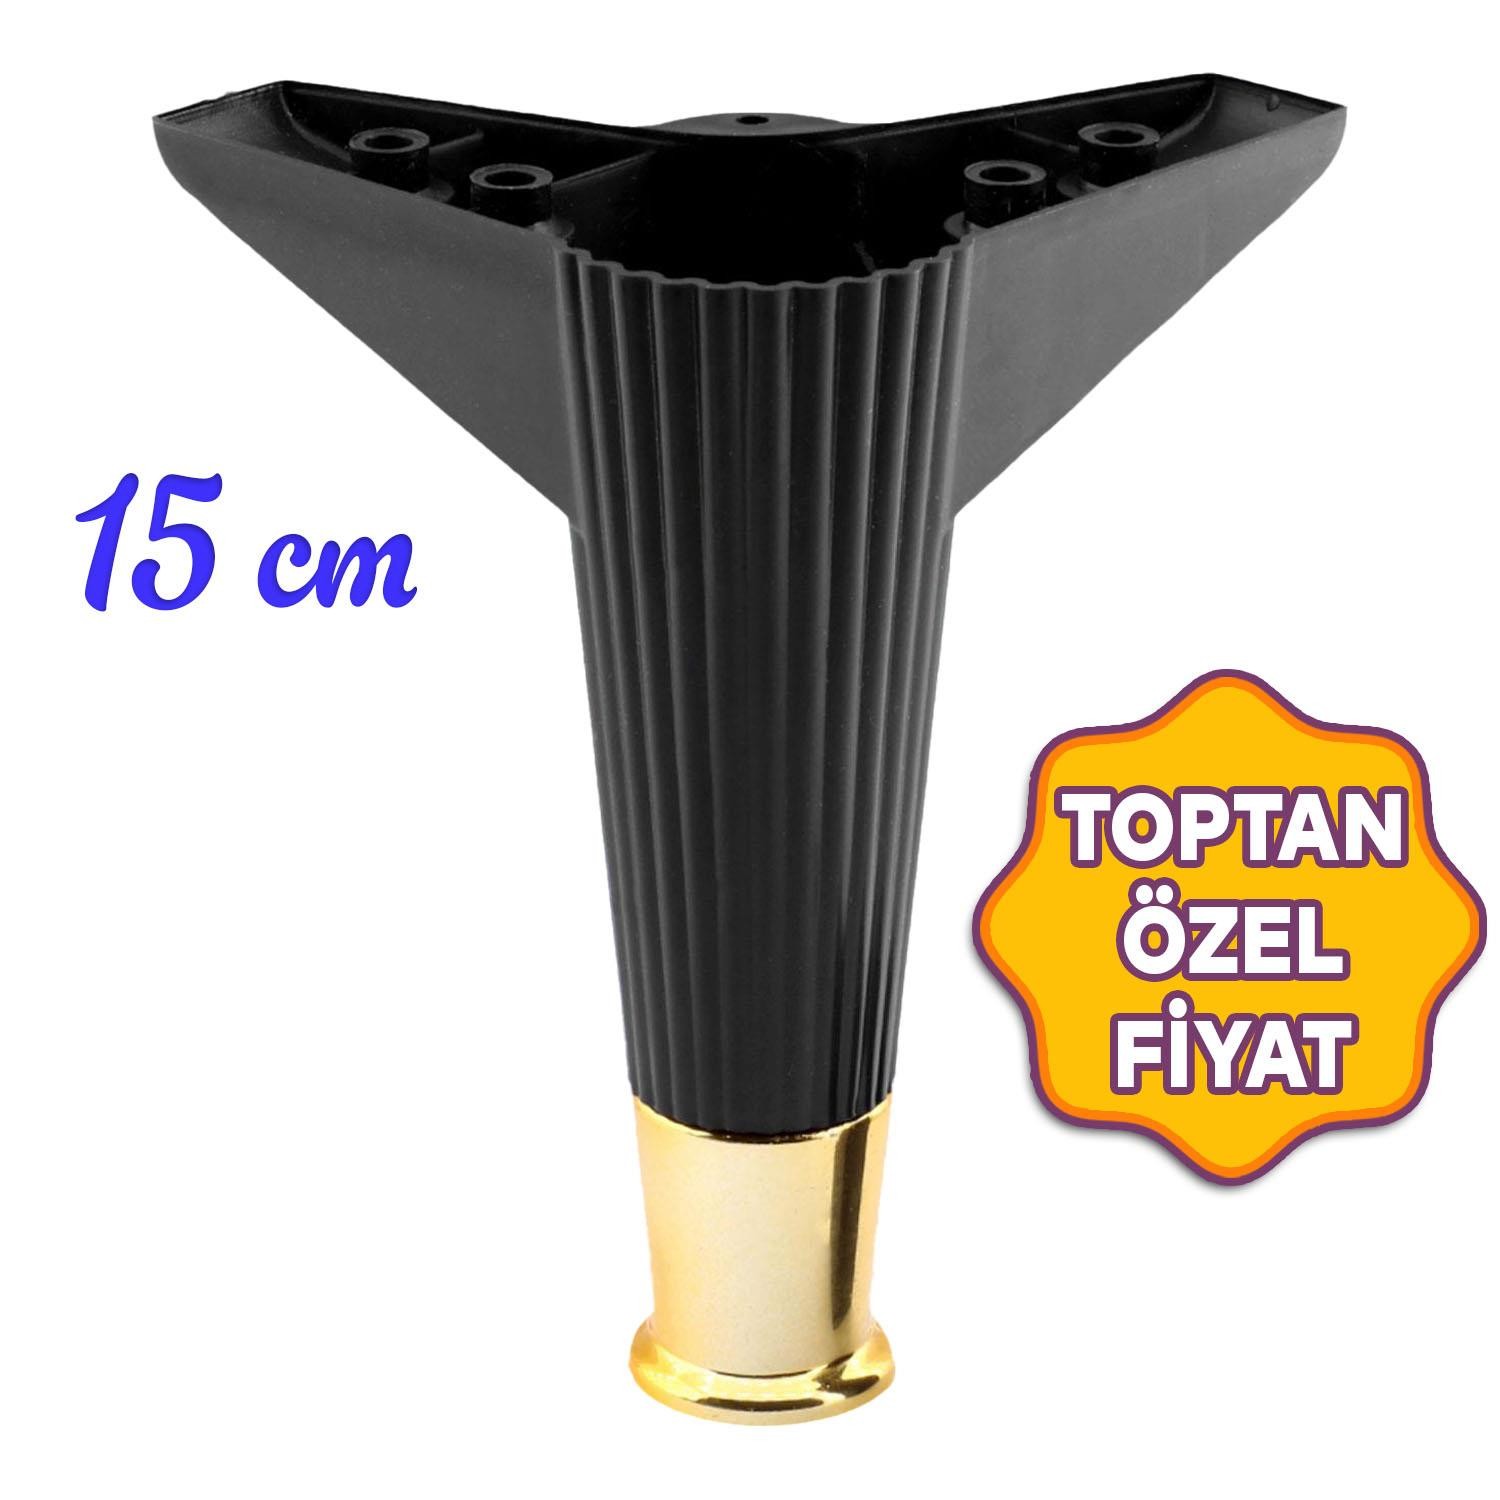 Elista Lüks Mobilya Kanepe Koltuk Baza Tv Ünitesi Ayağı Ayakları 15 cm Siyah Altın Gold Toptan Satış